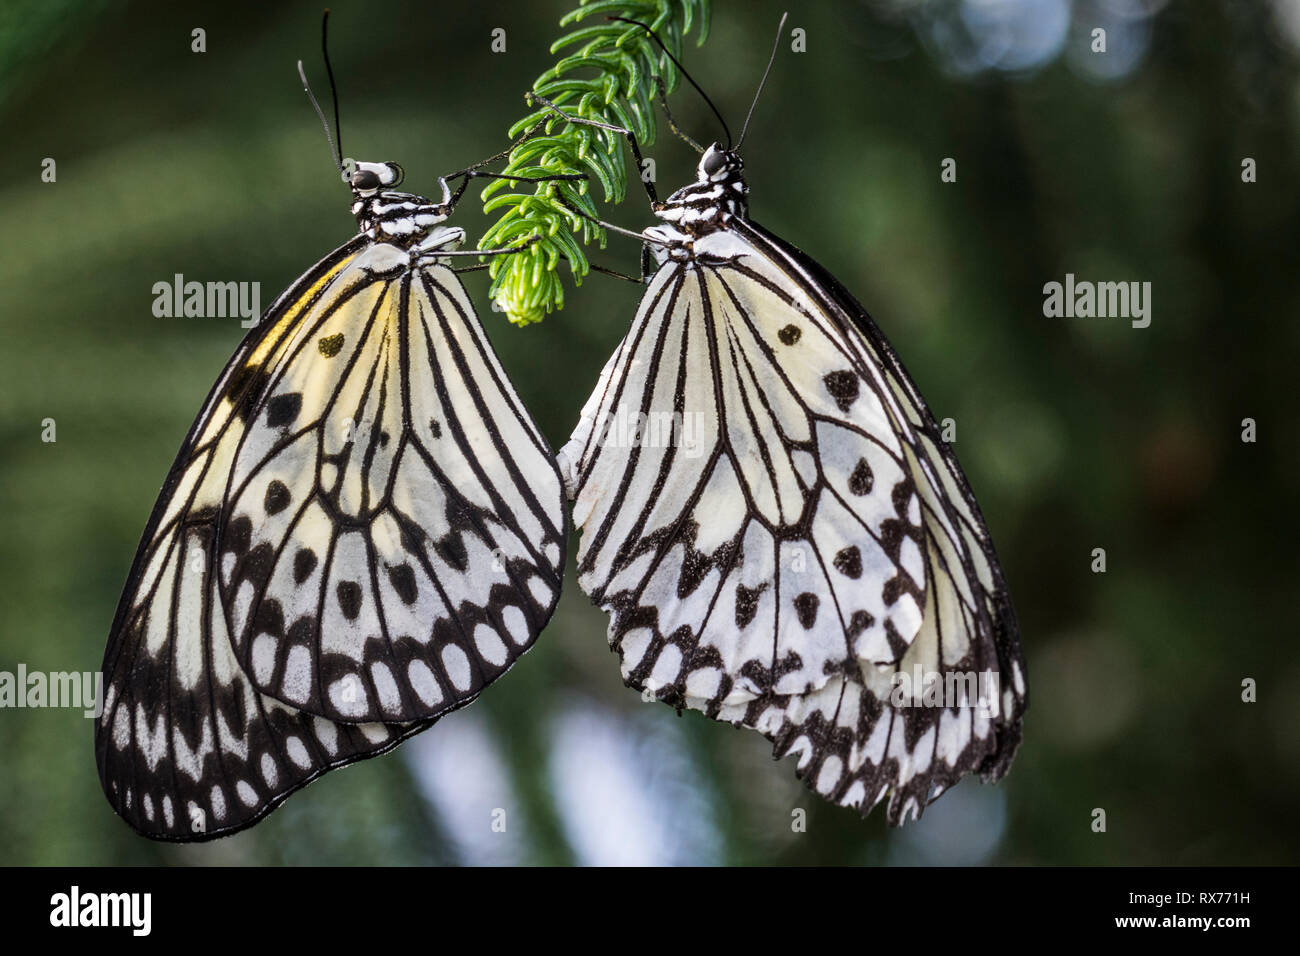 Paar Schmetterlinge: Papier Drachen, reispapier oder großer Baum Nymphe (Idea leuconoe) Paaren auf ein nadelbaum Zweig, die Botanischen Gärten von Montreal, Quebec, Kanada bekannt Stockfoto